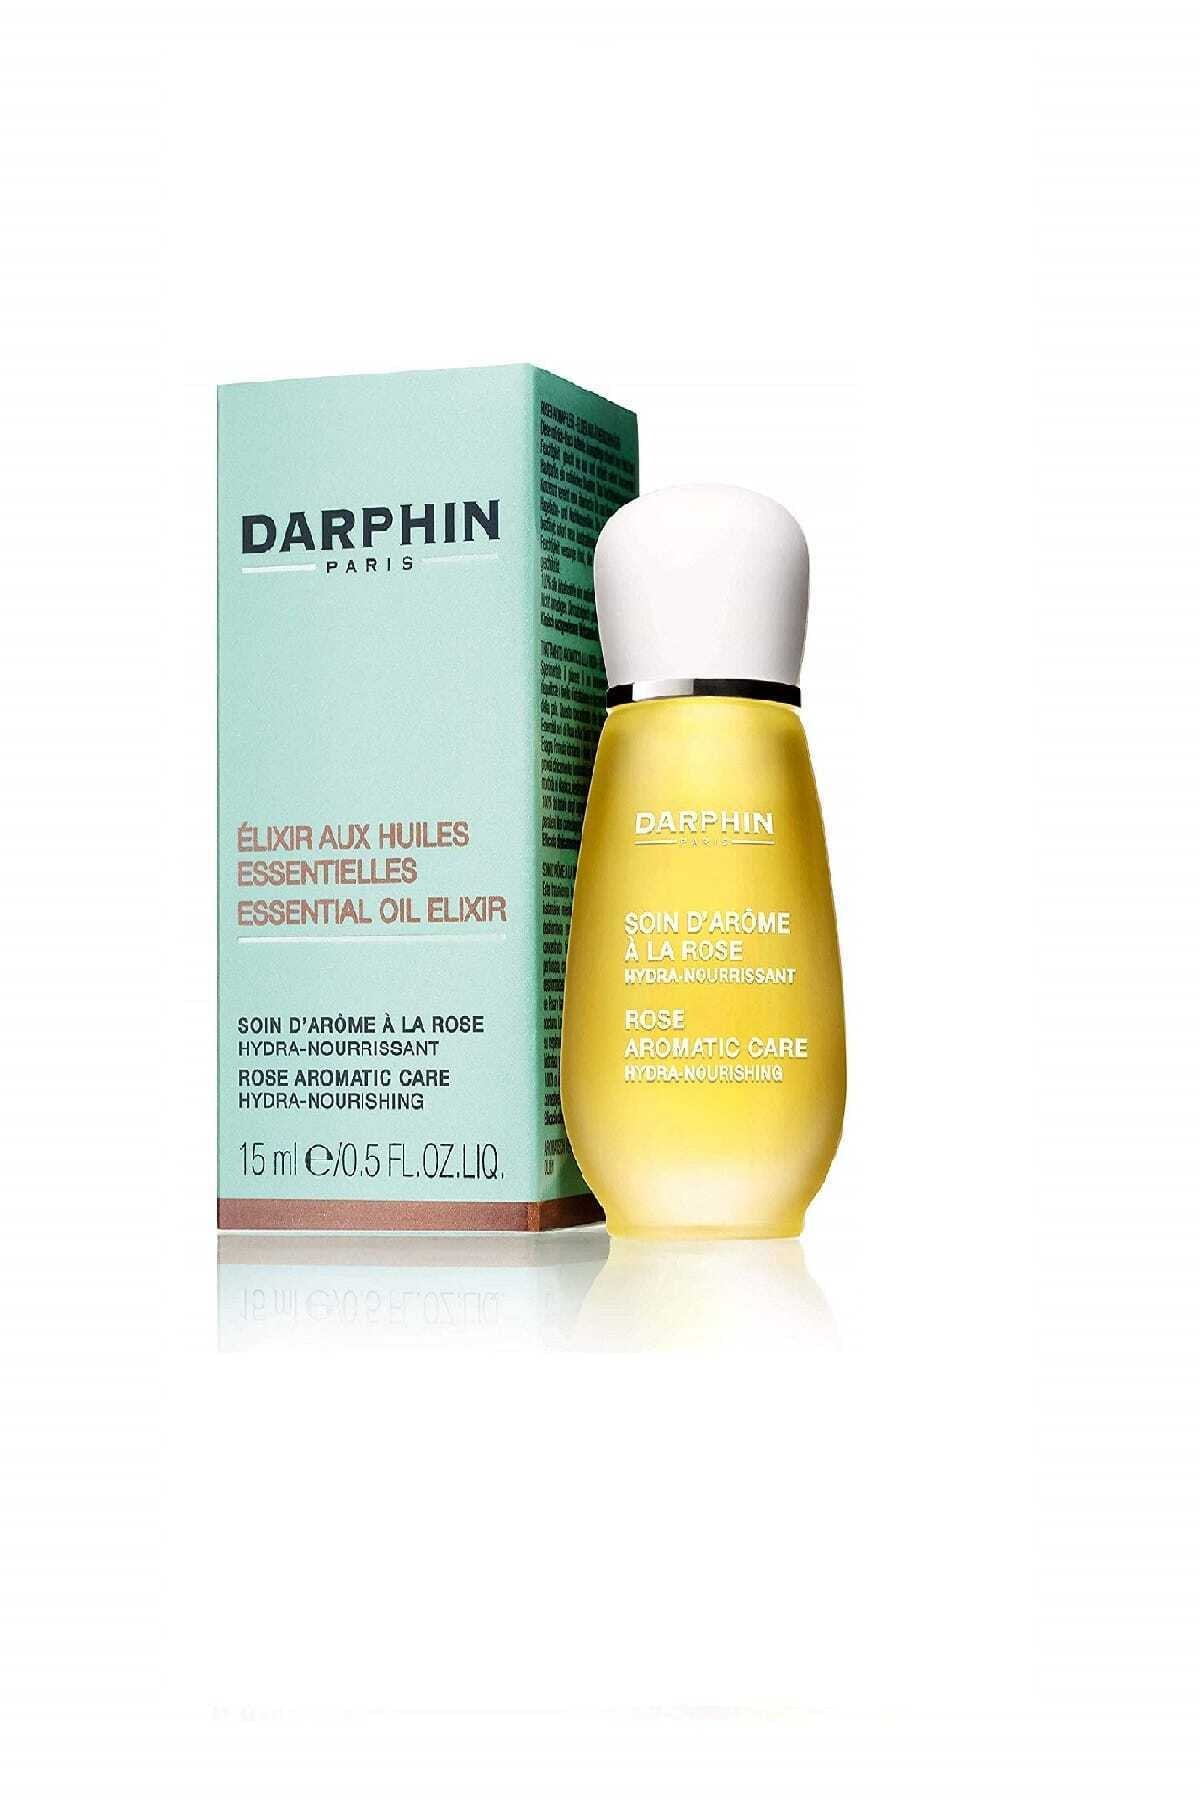 Darphin Aromatik Bakım- Rose Aromatic Care Hydra-Nourishing- Kuru Ciltler 15 ml 882381091576 RN10557